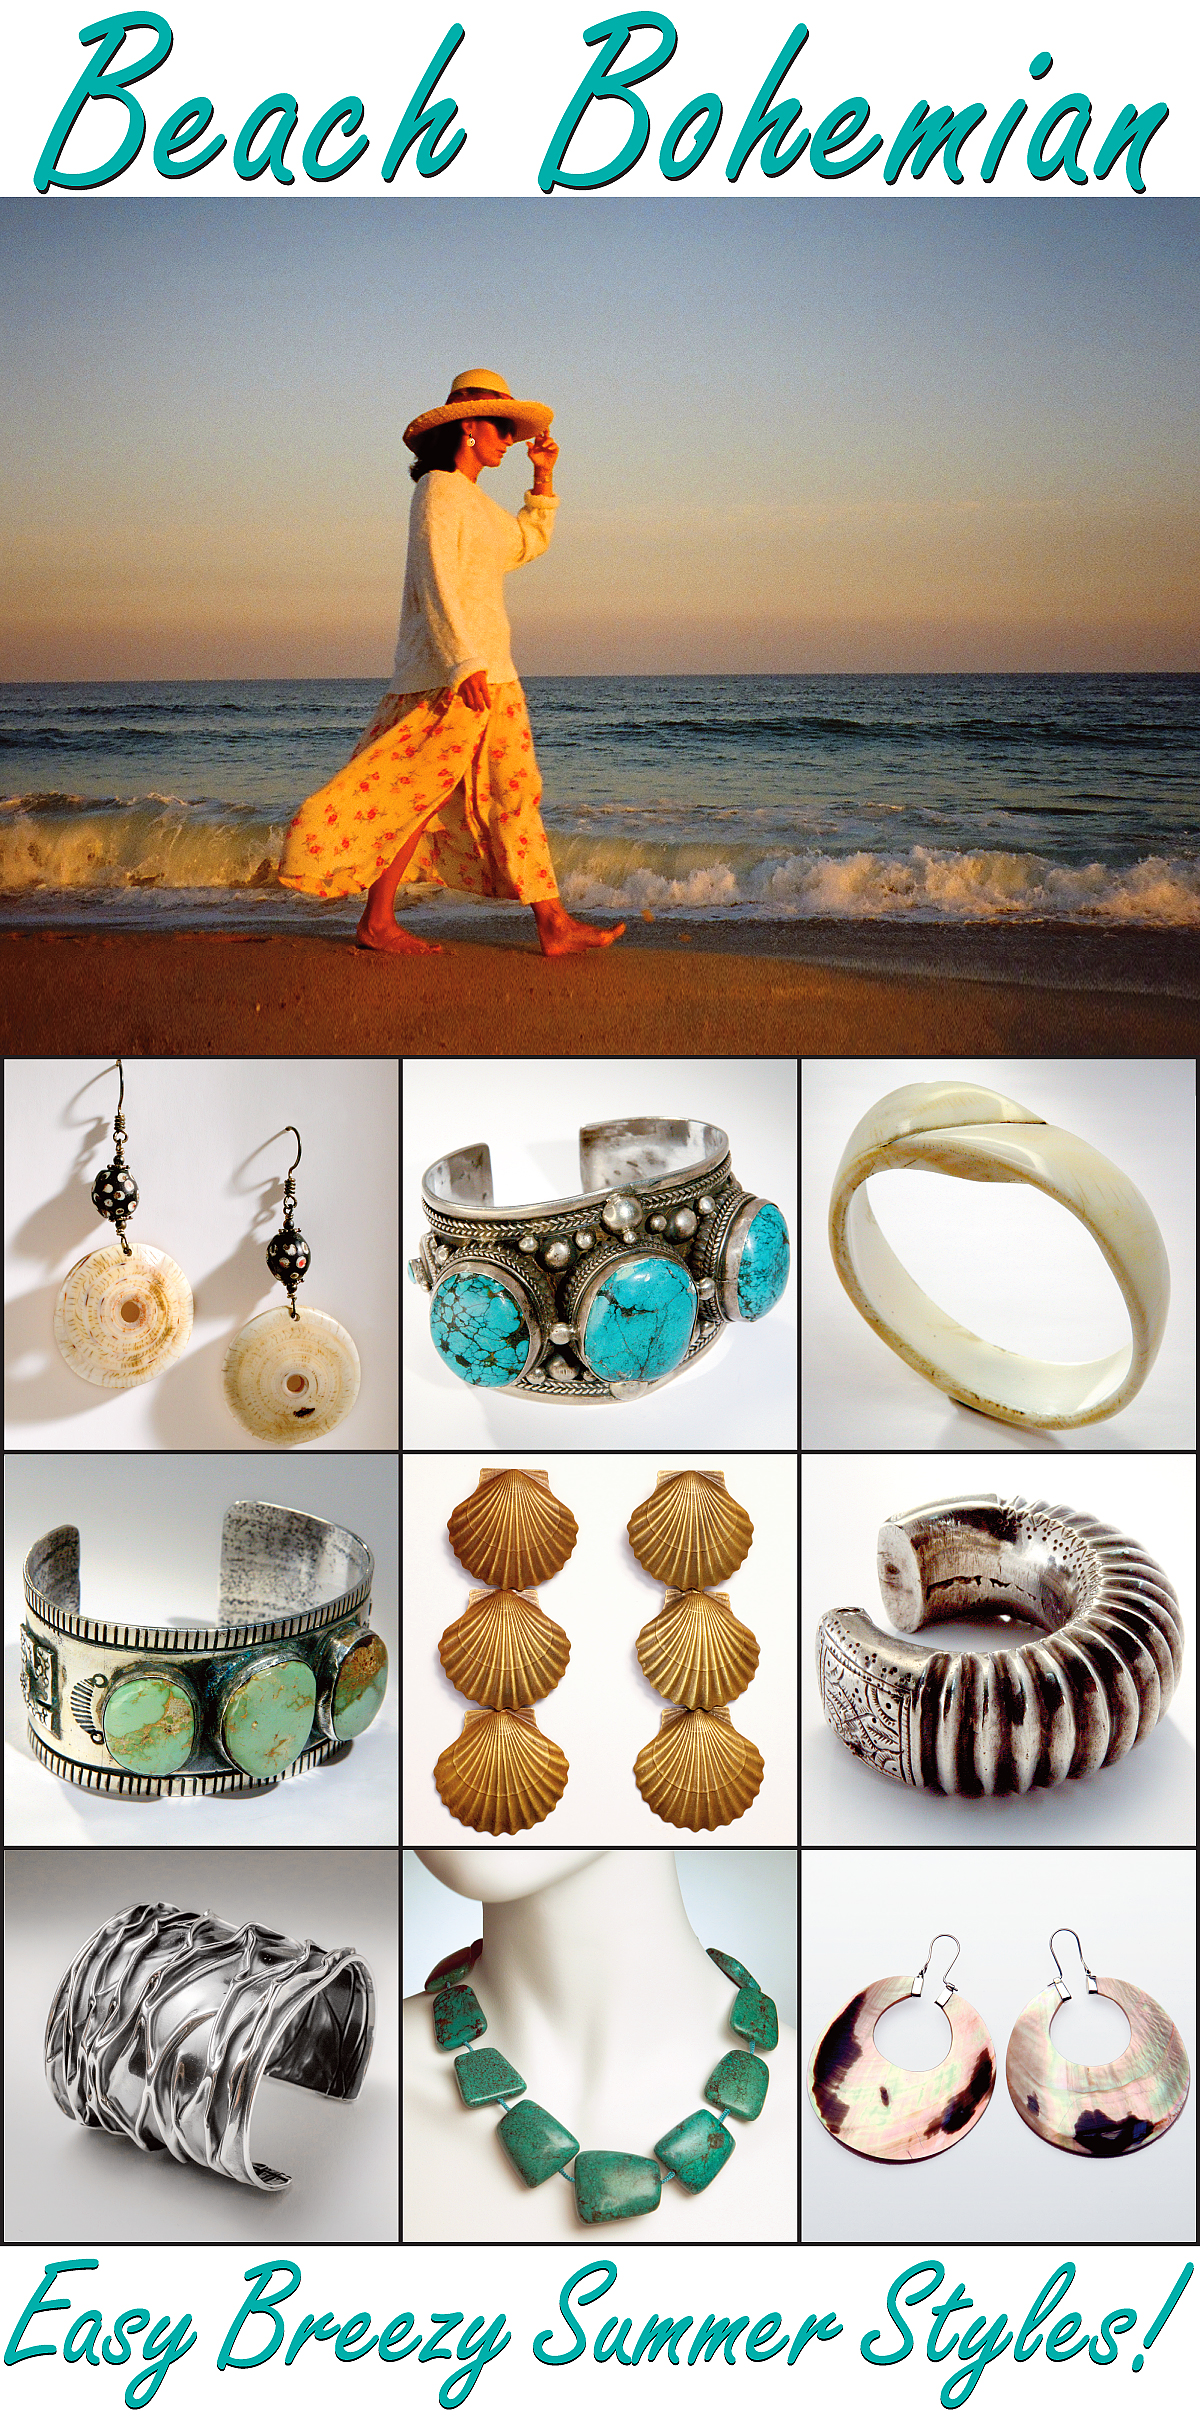 Beach Bohemian Jewelry